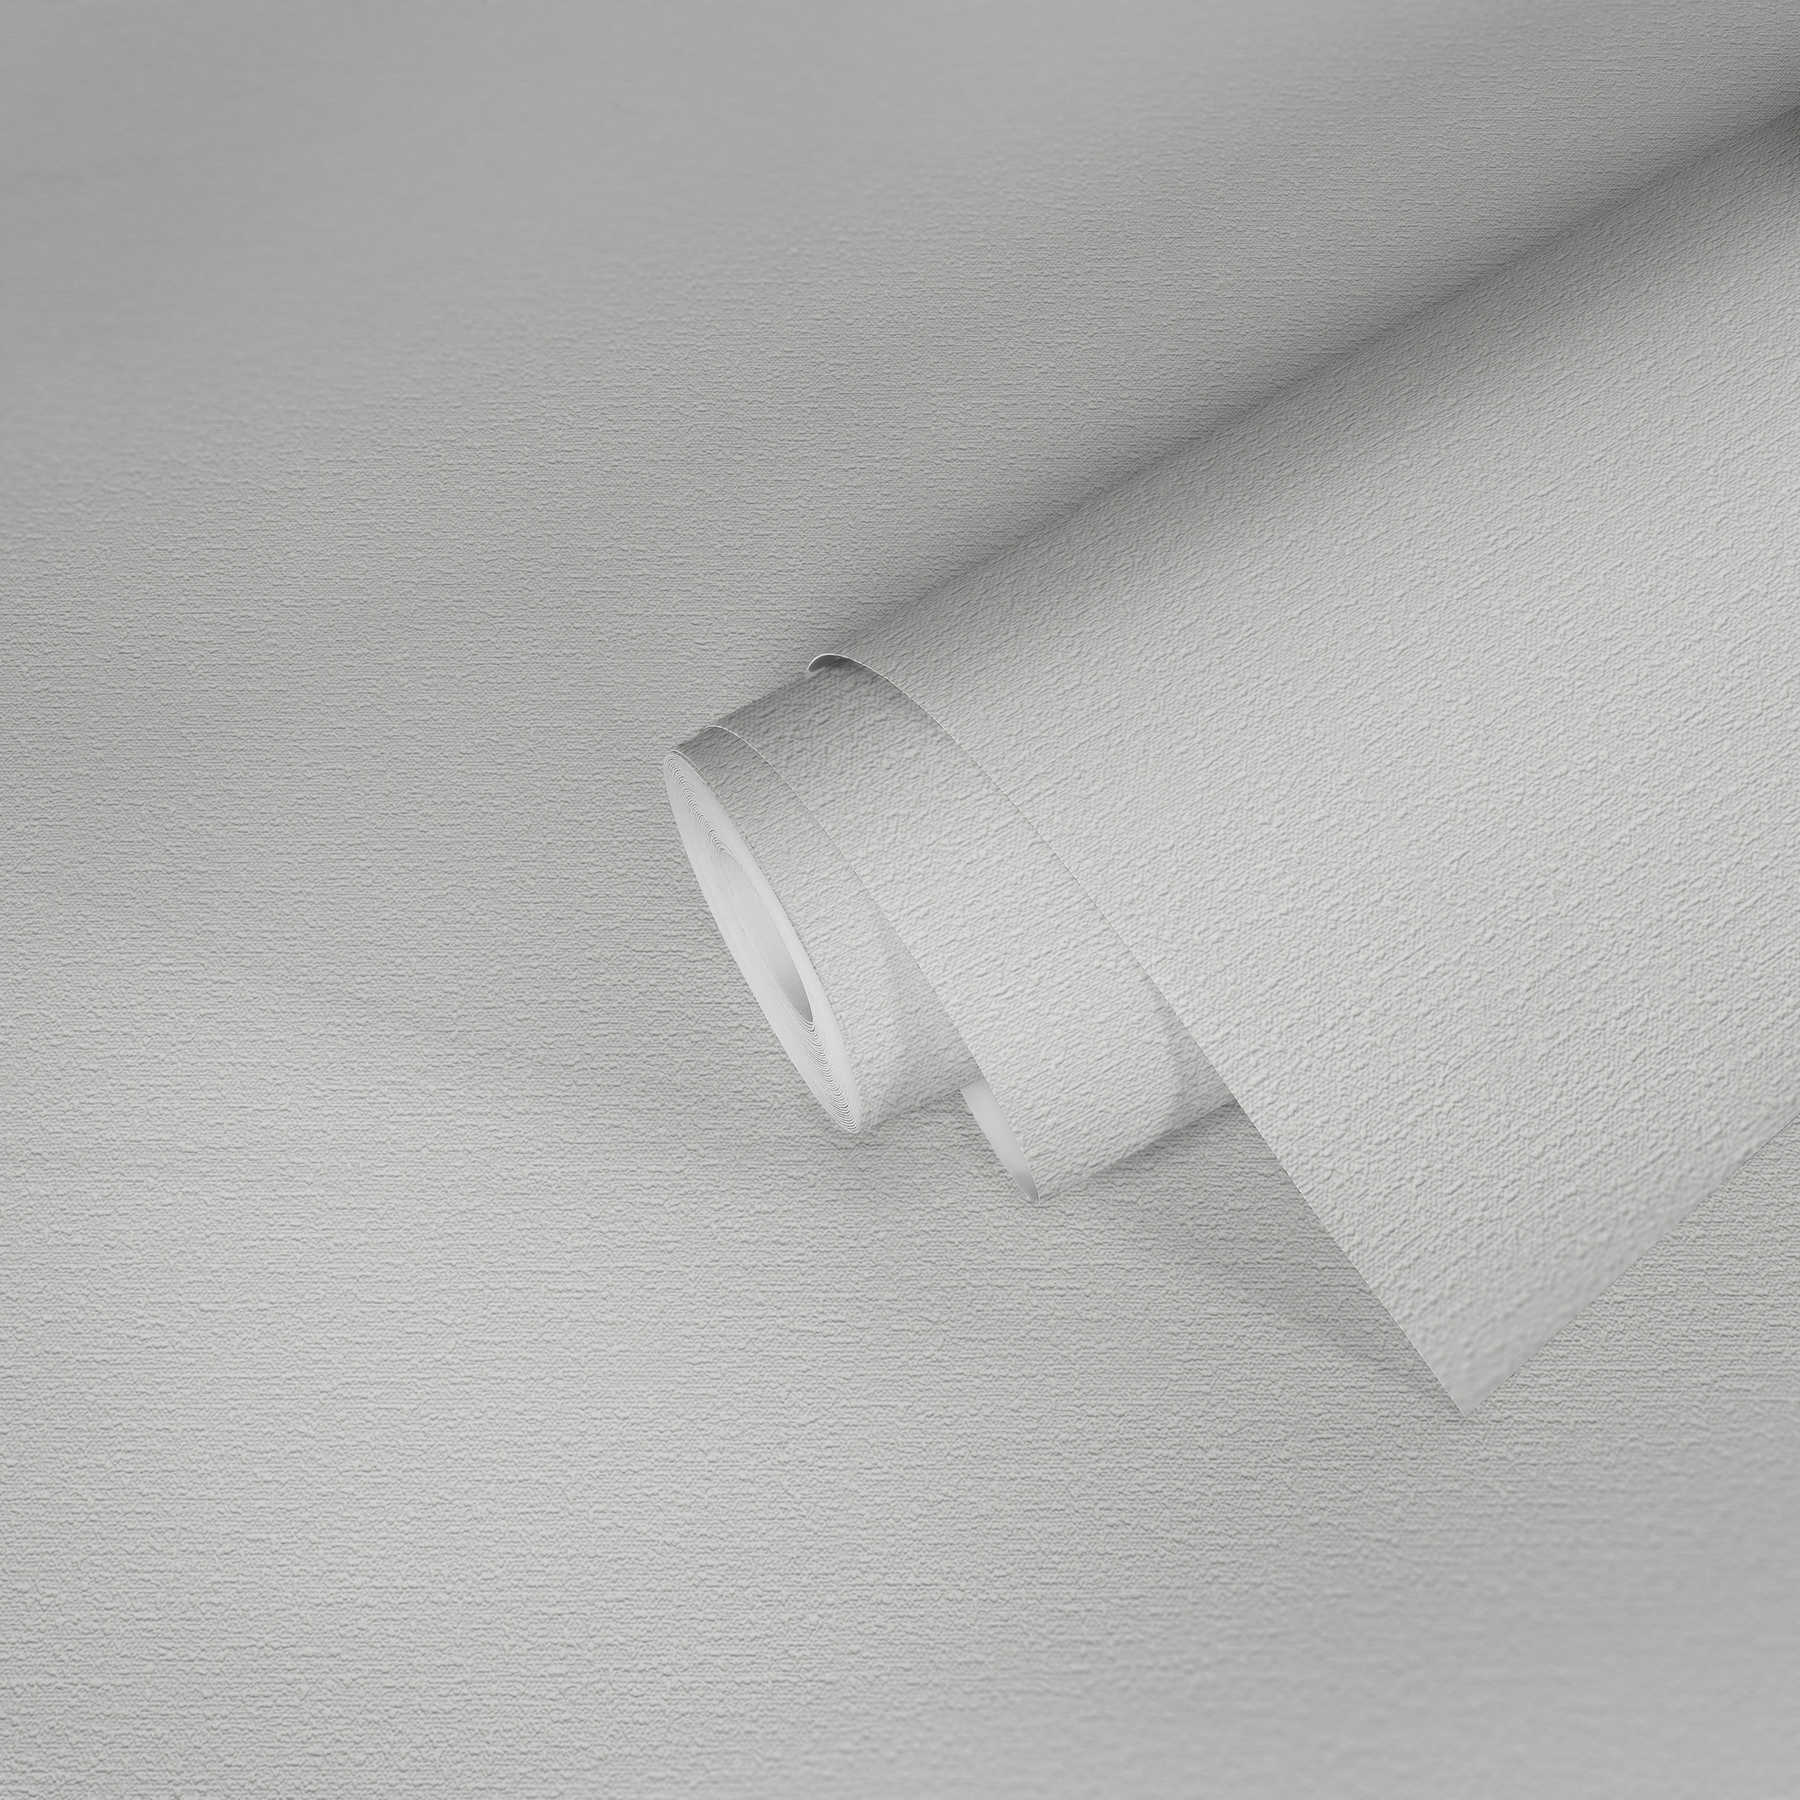             Papel pintado blanco con estructura de aspecto textil
        